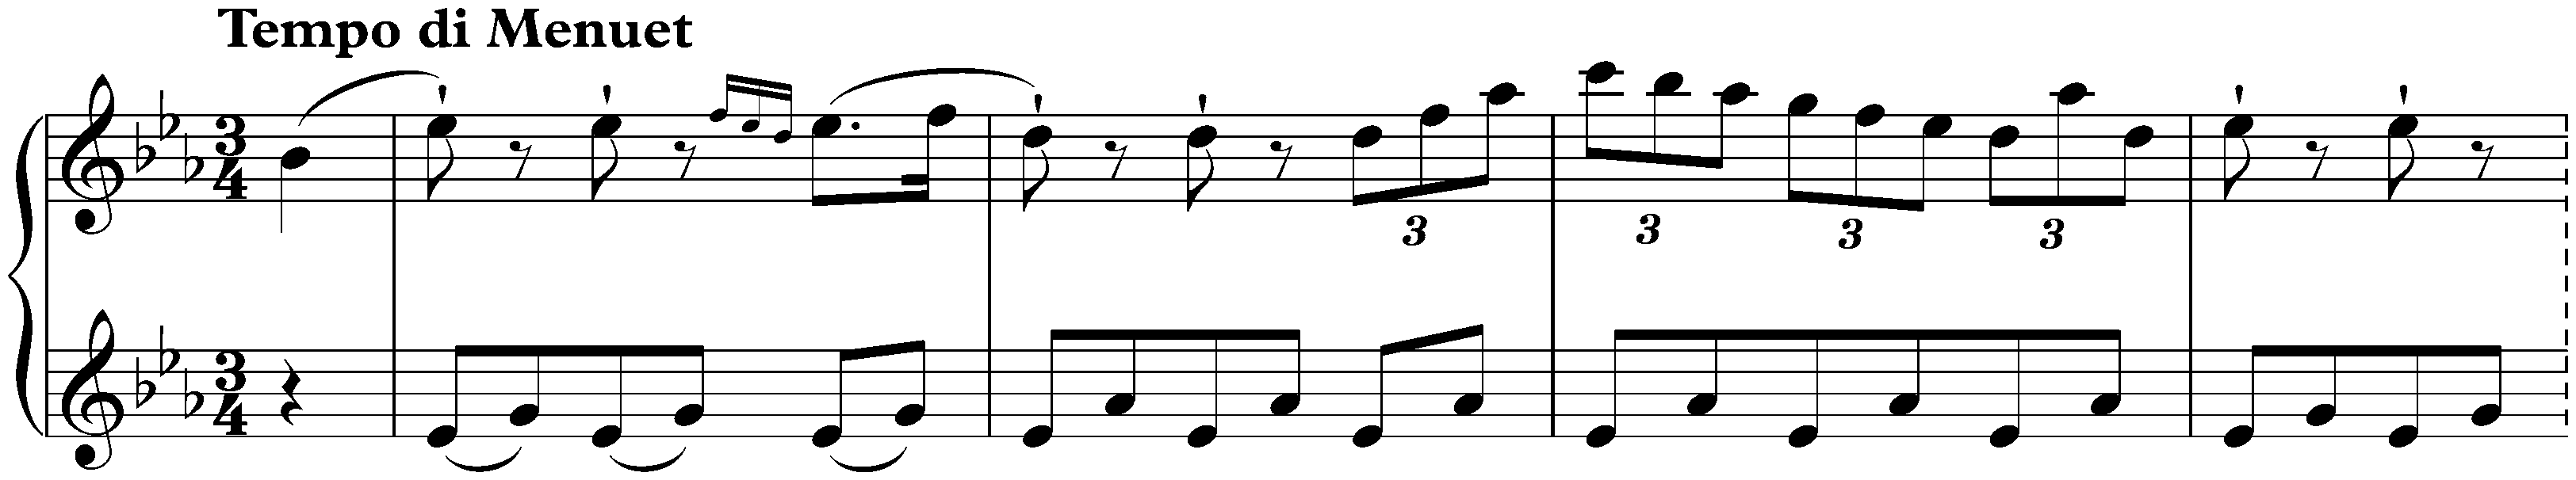 Sonata in E-flat major, Hob. XVI:49; 3. Finale: Tempo di Minuet